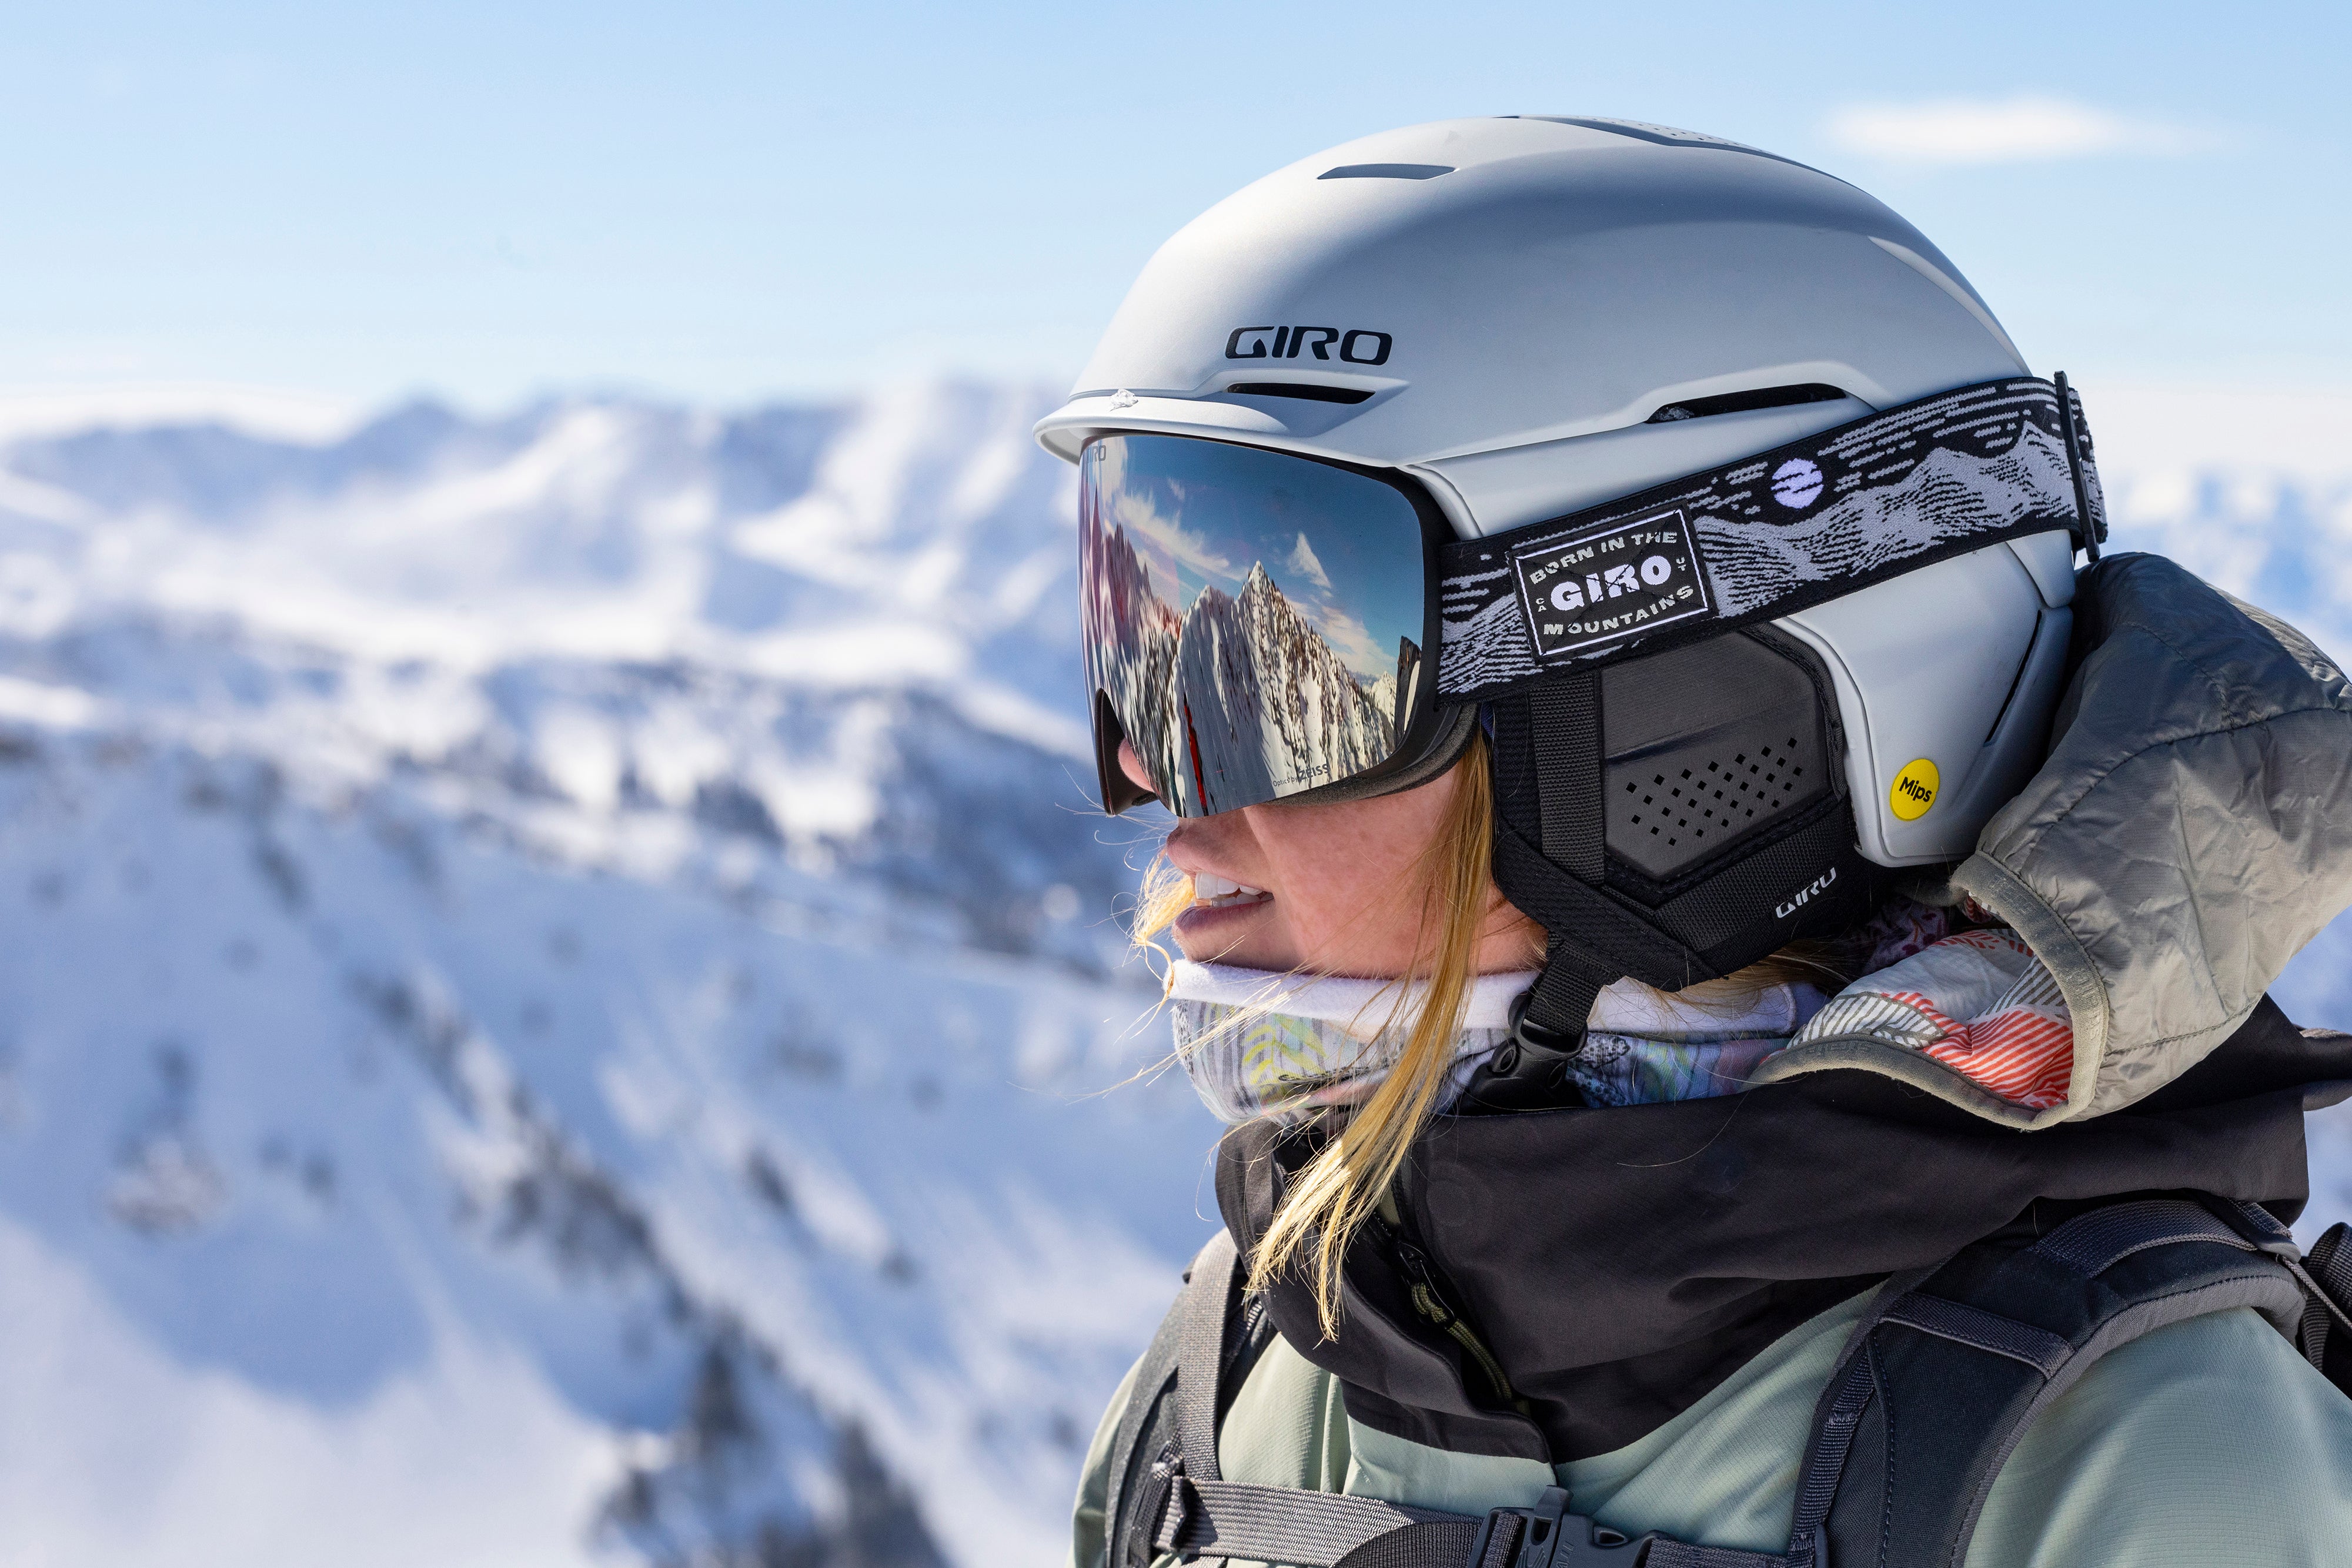 Esqui Outlet  TU outlet online de esquí con las mejores ofertas y precios